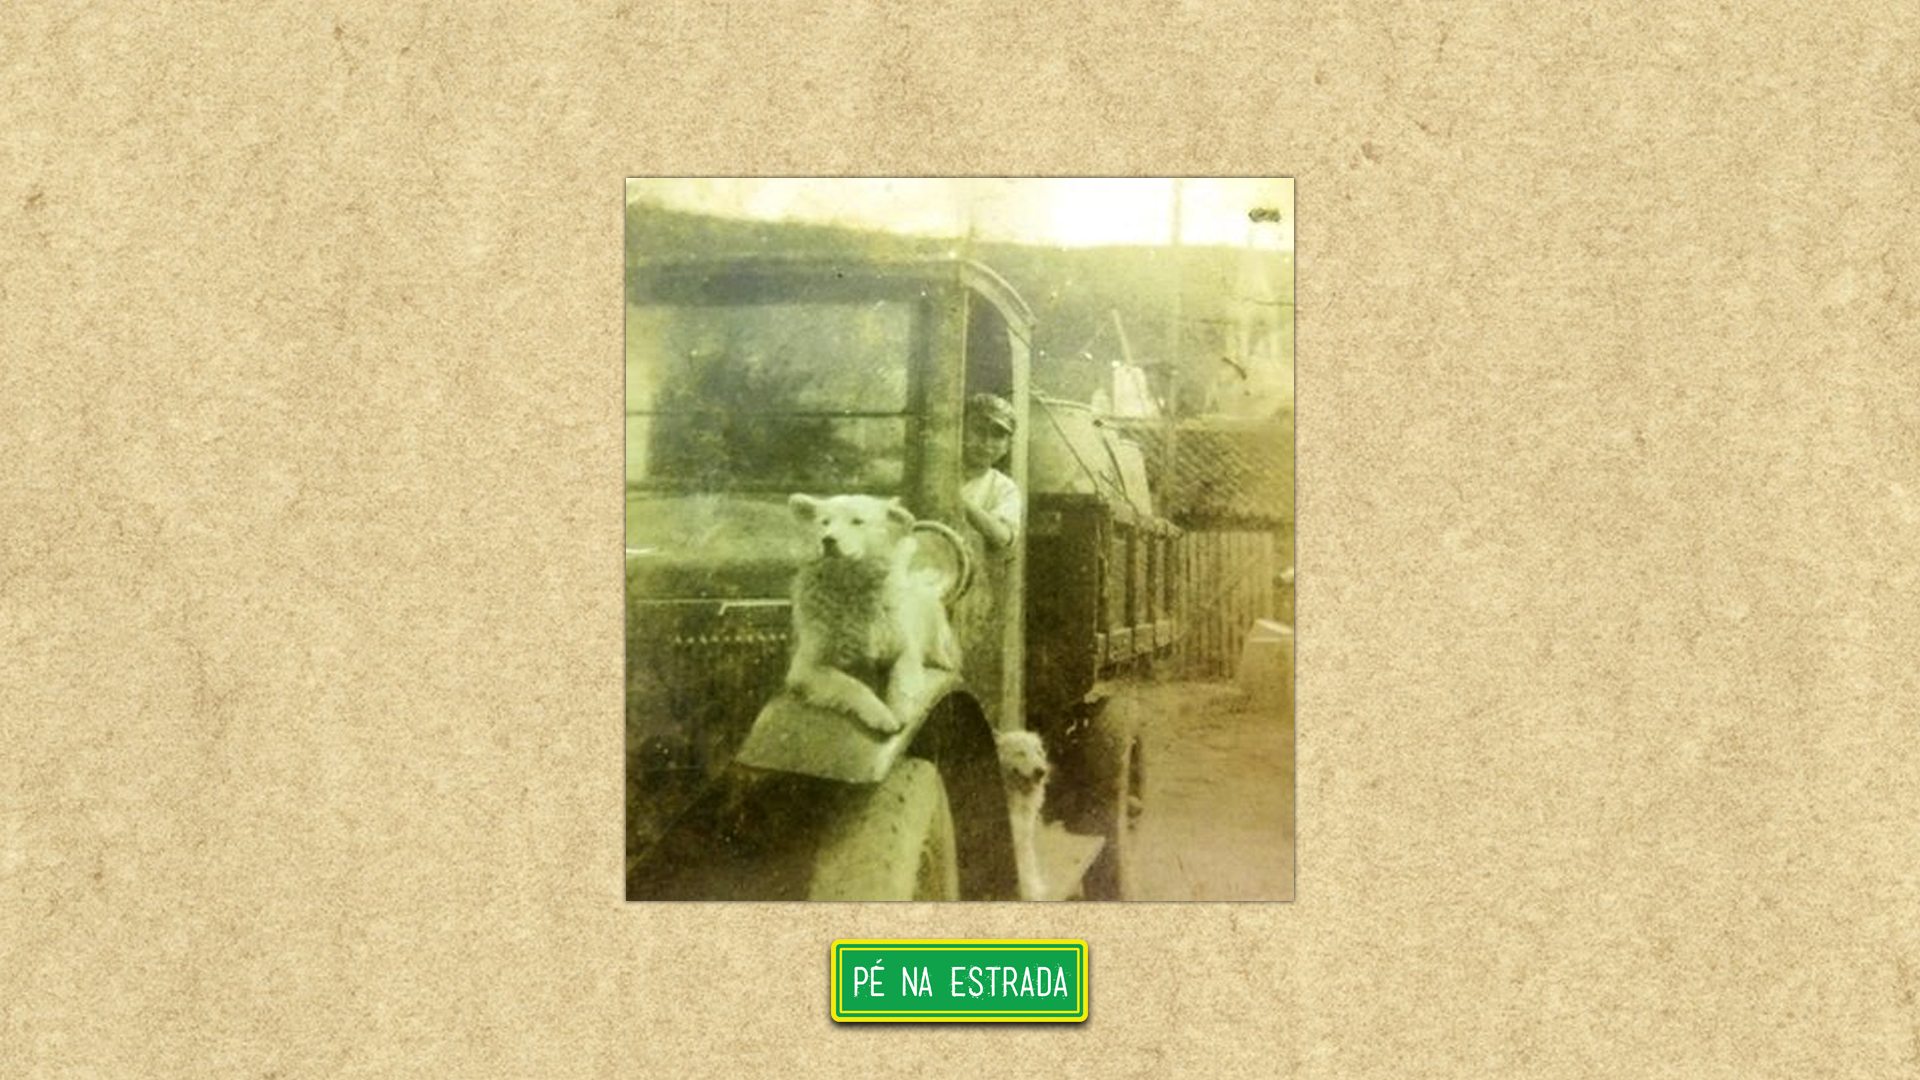 Foto enviada por: Italo R. Languardia: ” Caminhão International, modelo F26, ano 1924. Pertencia ao meu pai,Nicolau Laguardia, e estava carregado com tambores de gasolina.”